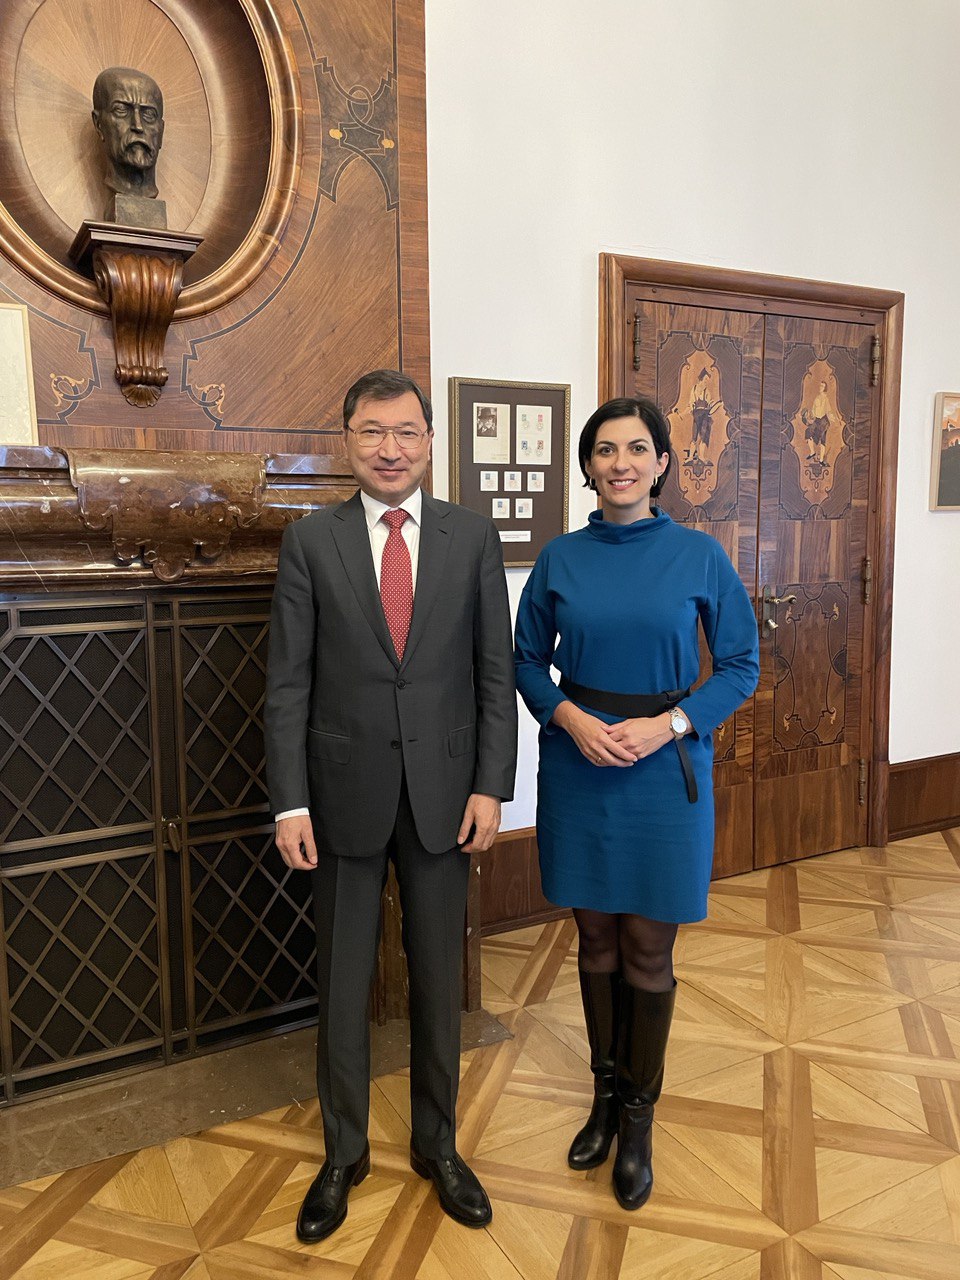 Česká republika má zájem rozvíjet meziparlamentní spolupráci s Kazachstánem